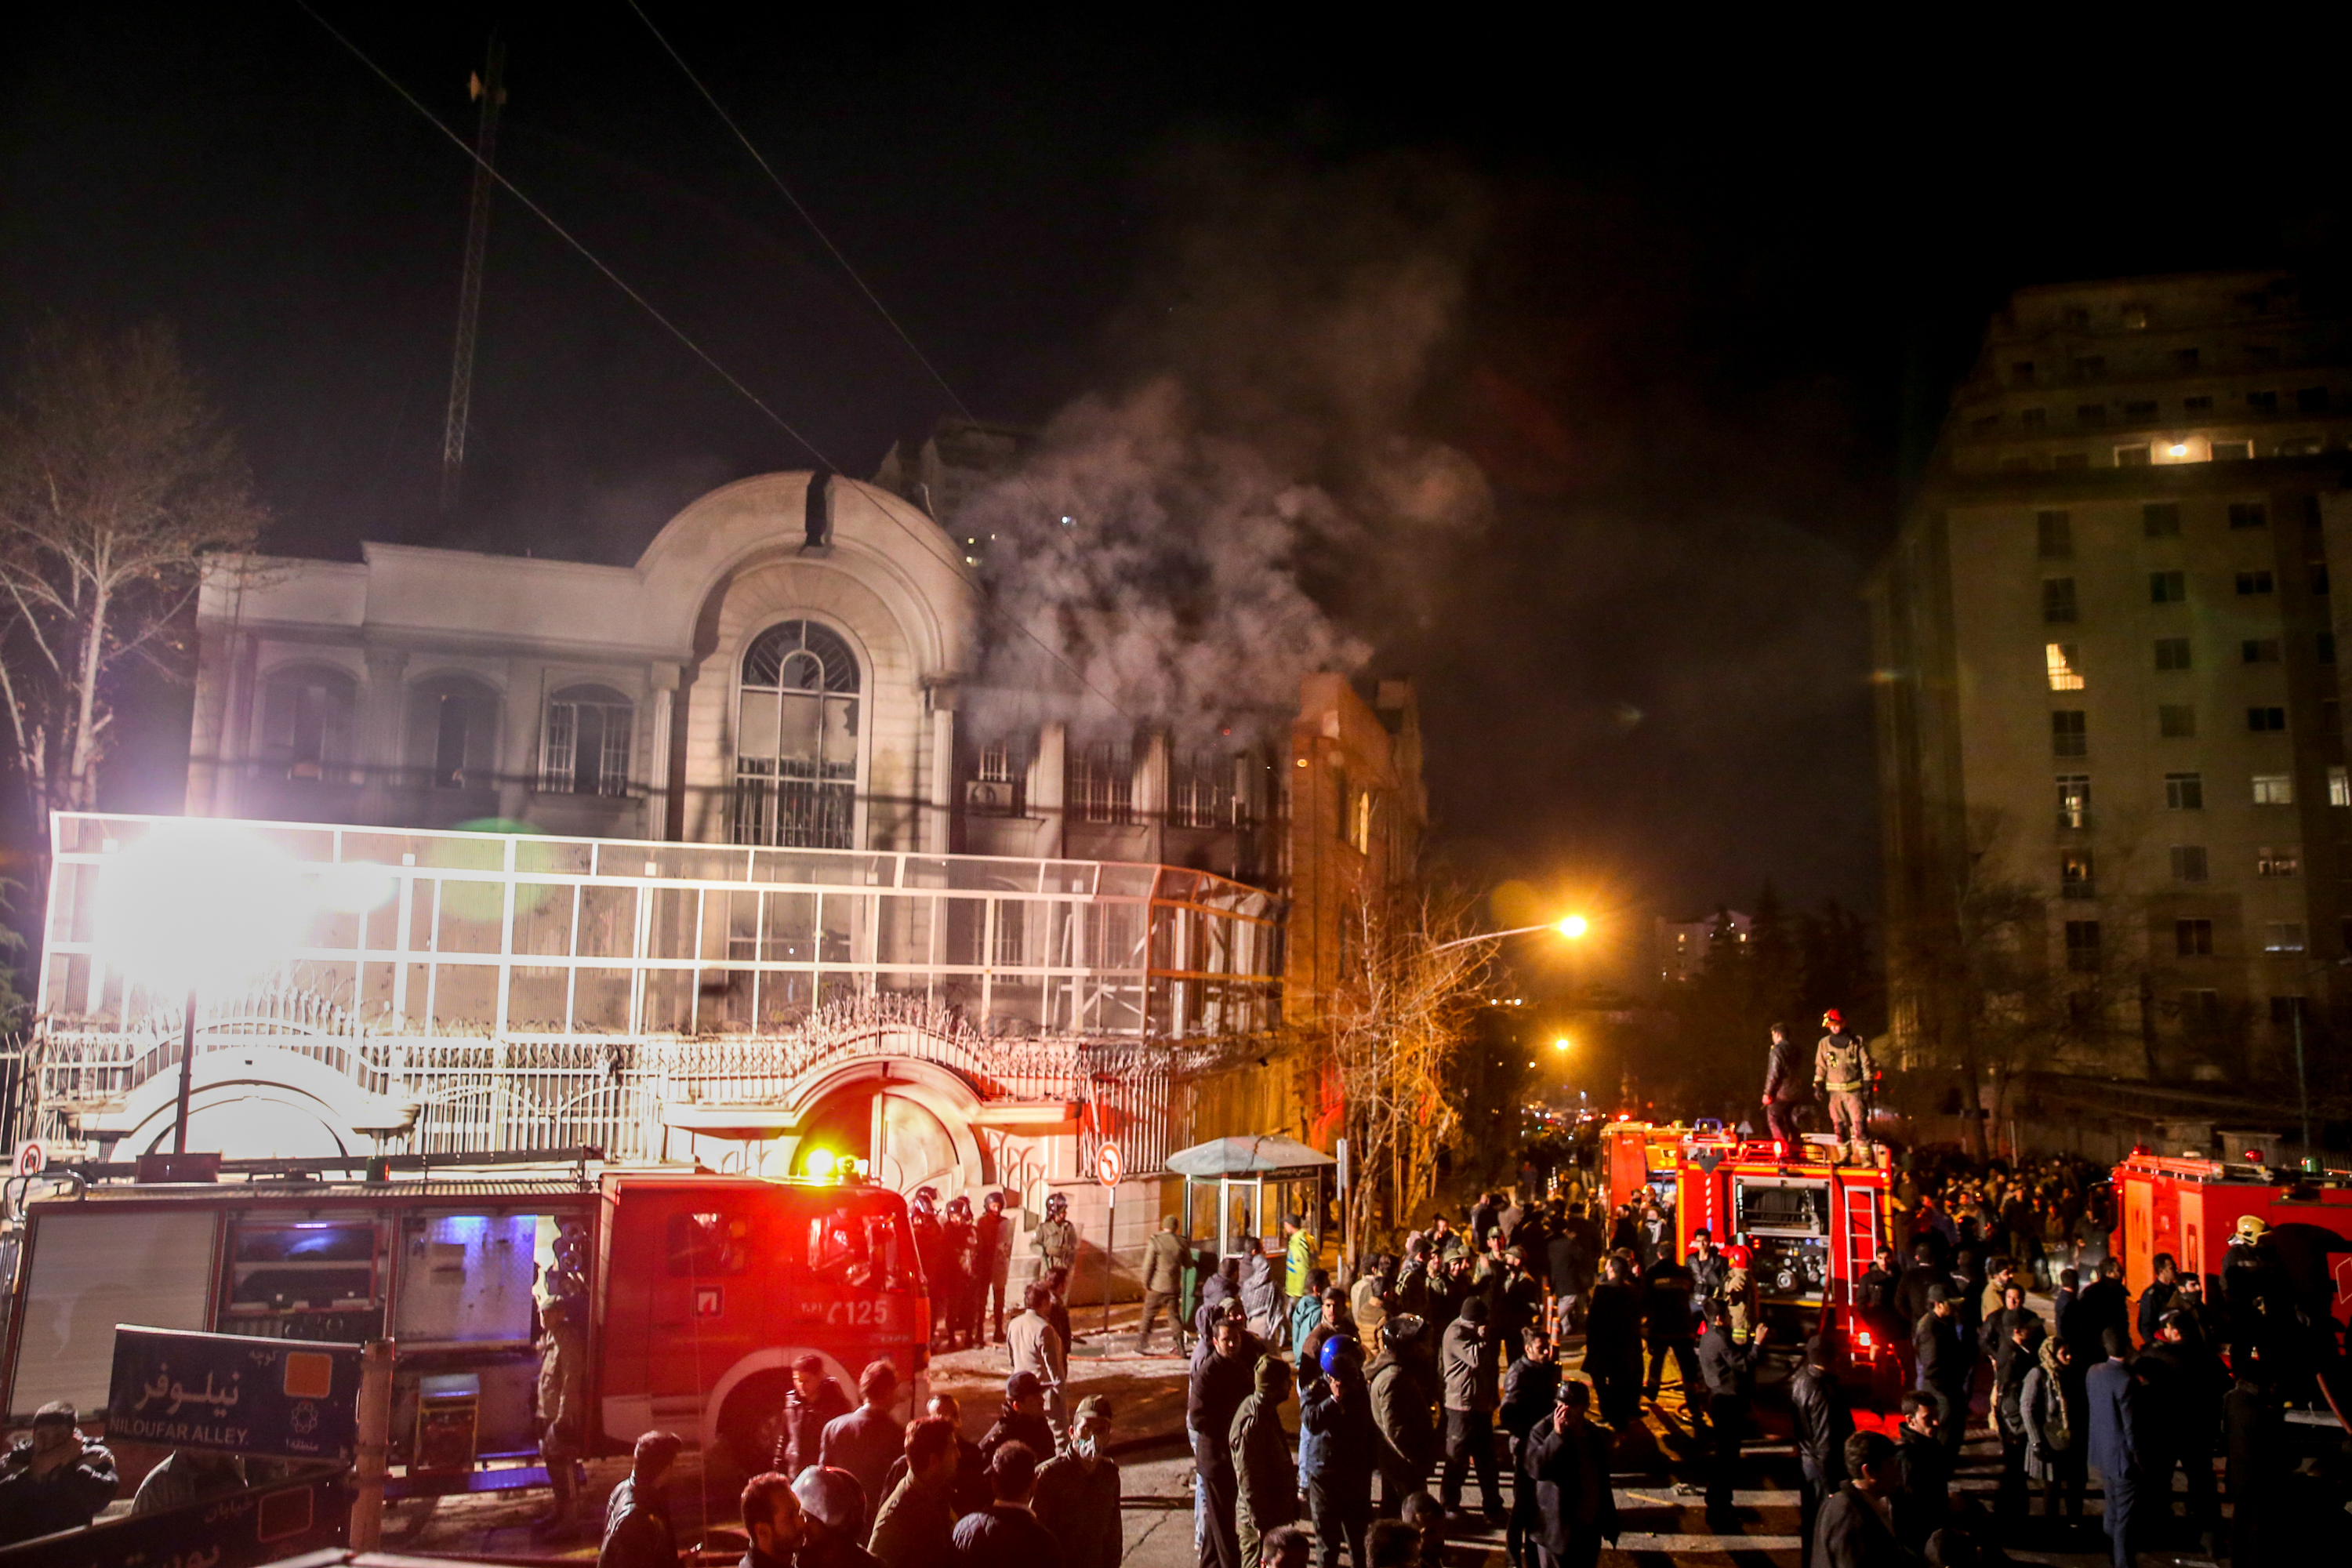 Após ser invadido e vandalizado por manifestantes, prédio da embaixada da Arábia Saudita em Teerã, no Irã, é visto com fumaça saindo das janelas (Foto: Atta Kenare / AFP)